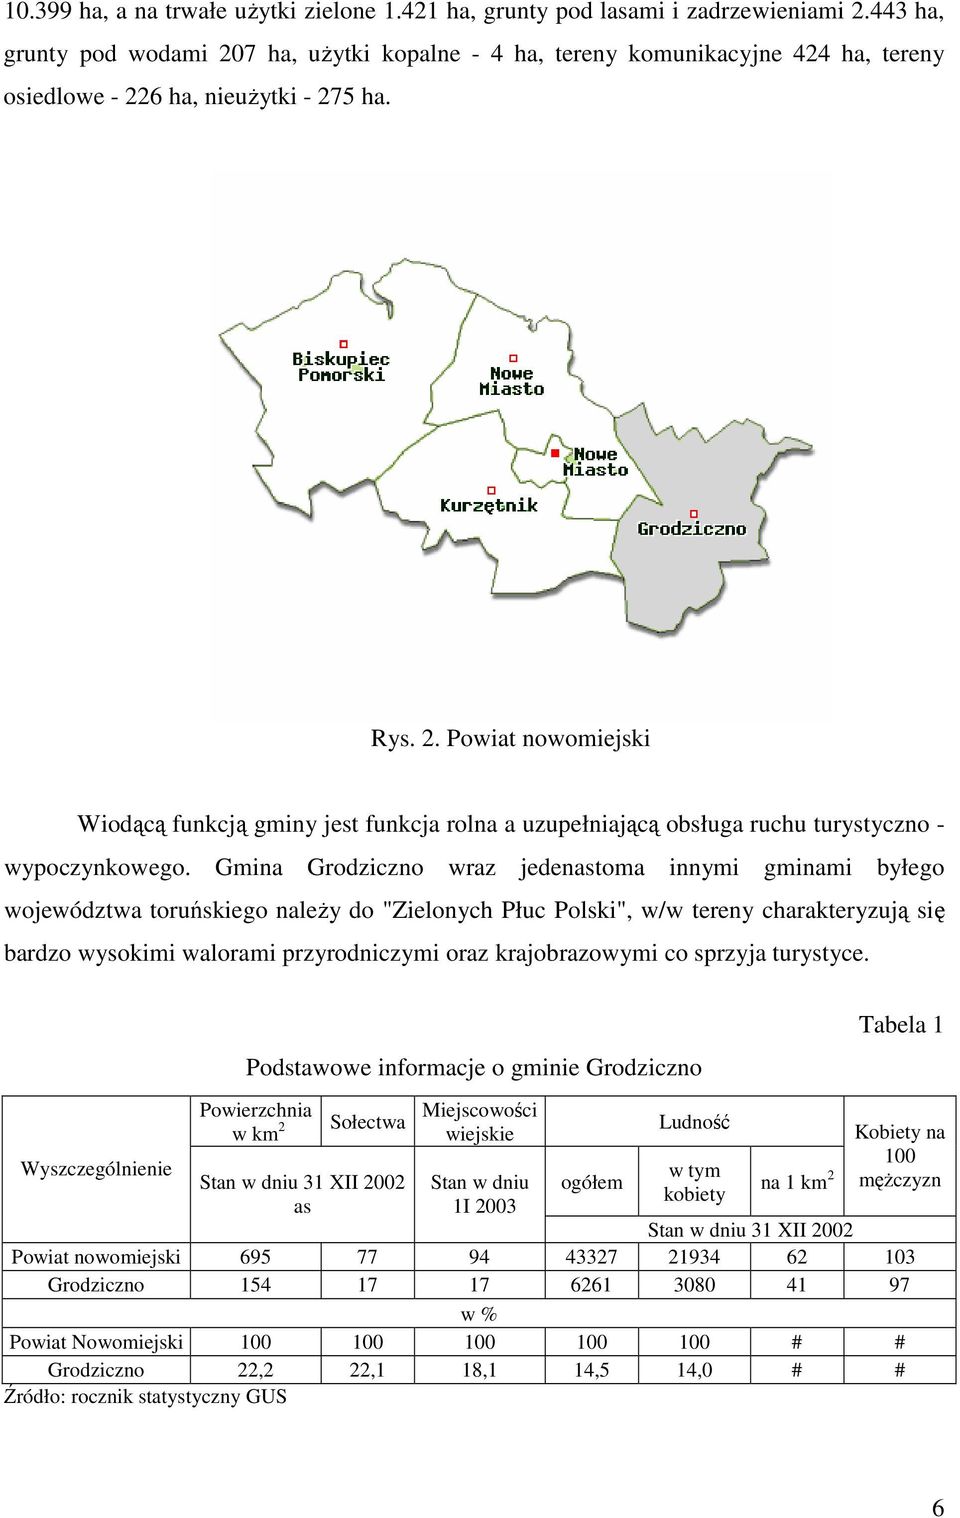 Gmina Grodziczno wraz jedenastoma innymi gminami byłego województwa toruńskiego naleŝy do "Zielonych Płuc Polski", w/w tereny charakteryzują się bardzo wysokimi walorami przyrodniczymi oraz